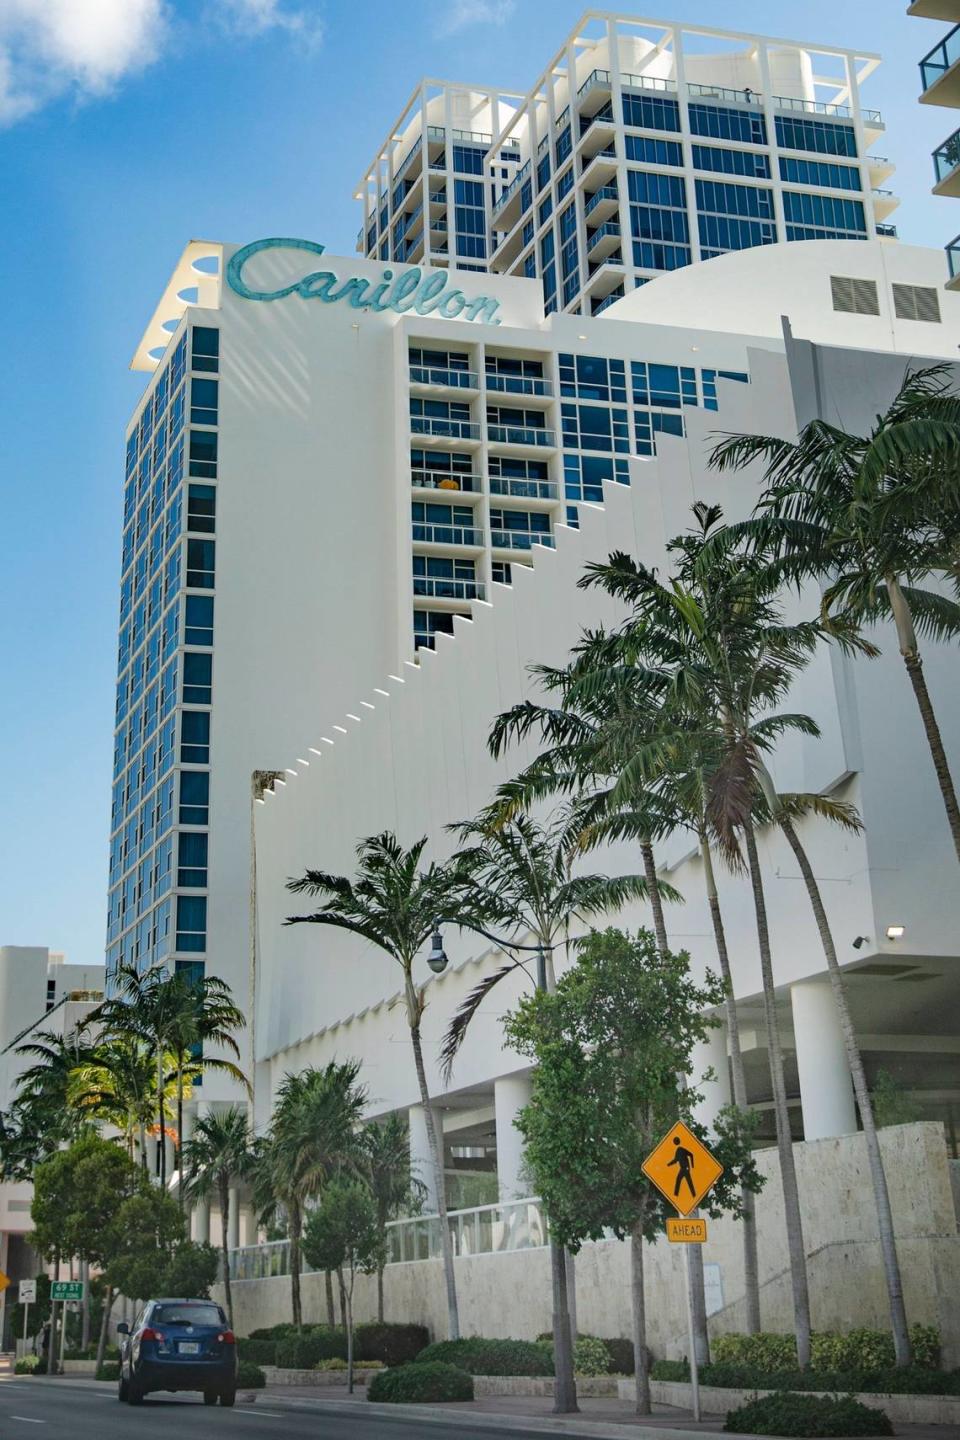 Carillon Hotel visto desde Collins Avenue en Miami Beach el 13 de julio de 2022. Es uno de los numerosos edificios históricos "art déco" de Miami Beach cuya conservación sería más difícil con la legislación estatal propuesta.